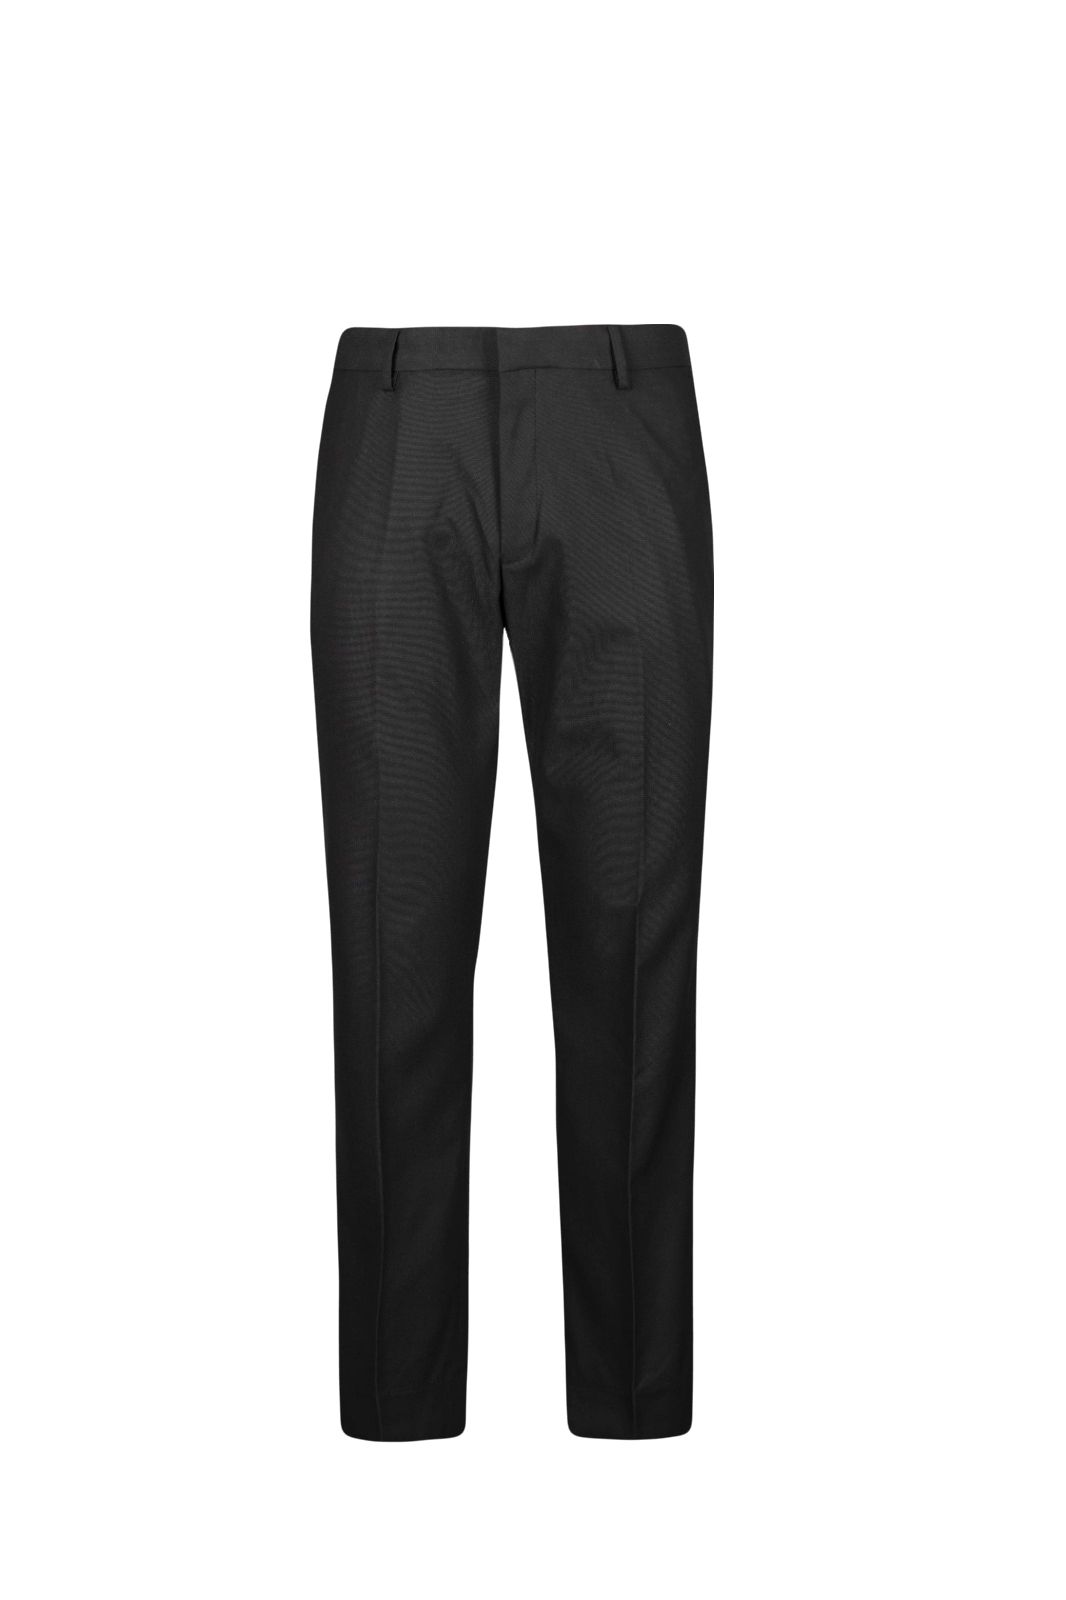 Goldlion Business Long Pants (Trim Fit, Black)